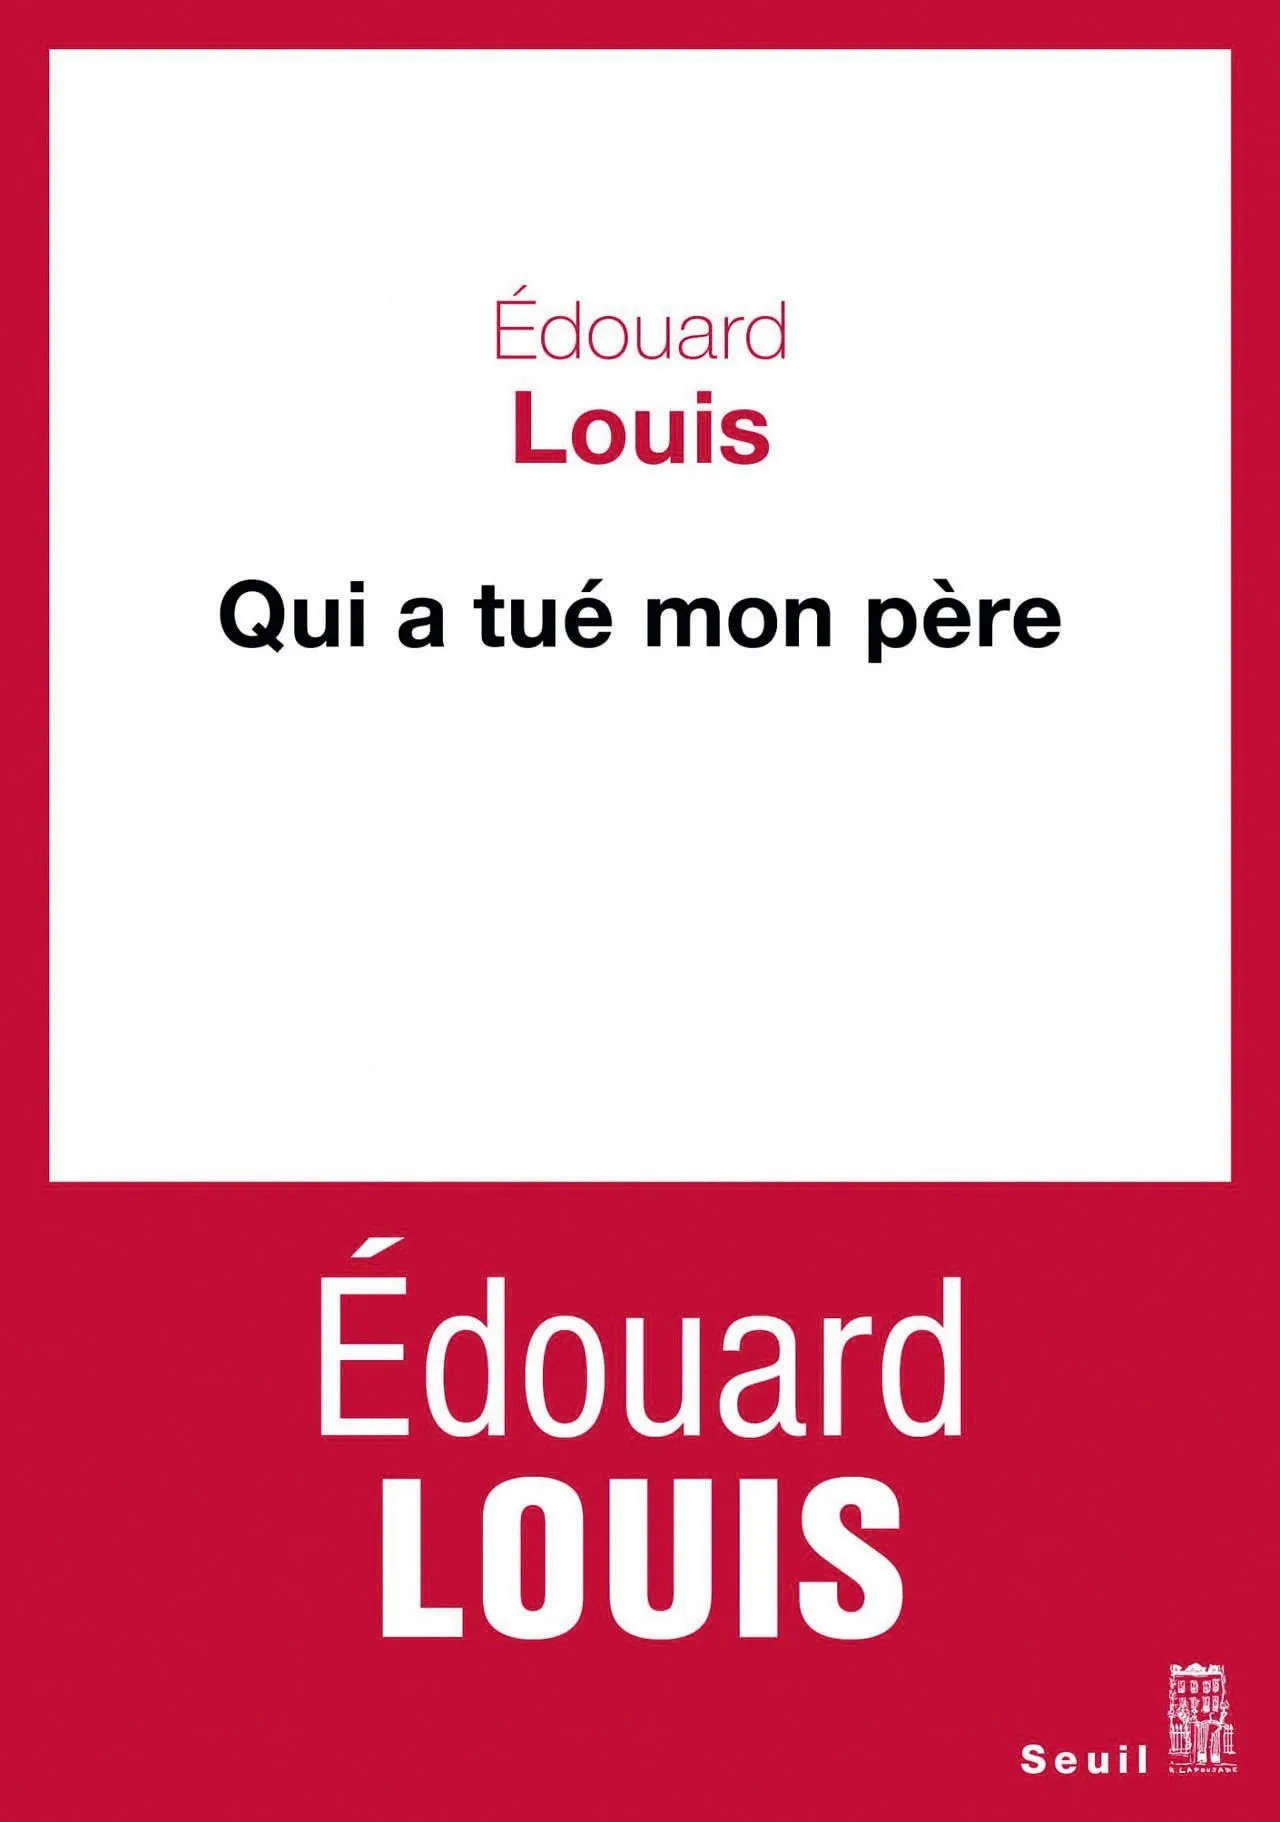 Édouard Louis,
Qui a tué mon père